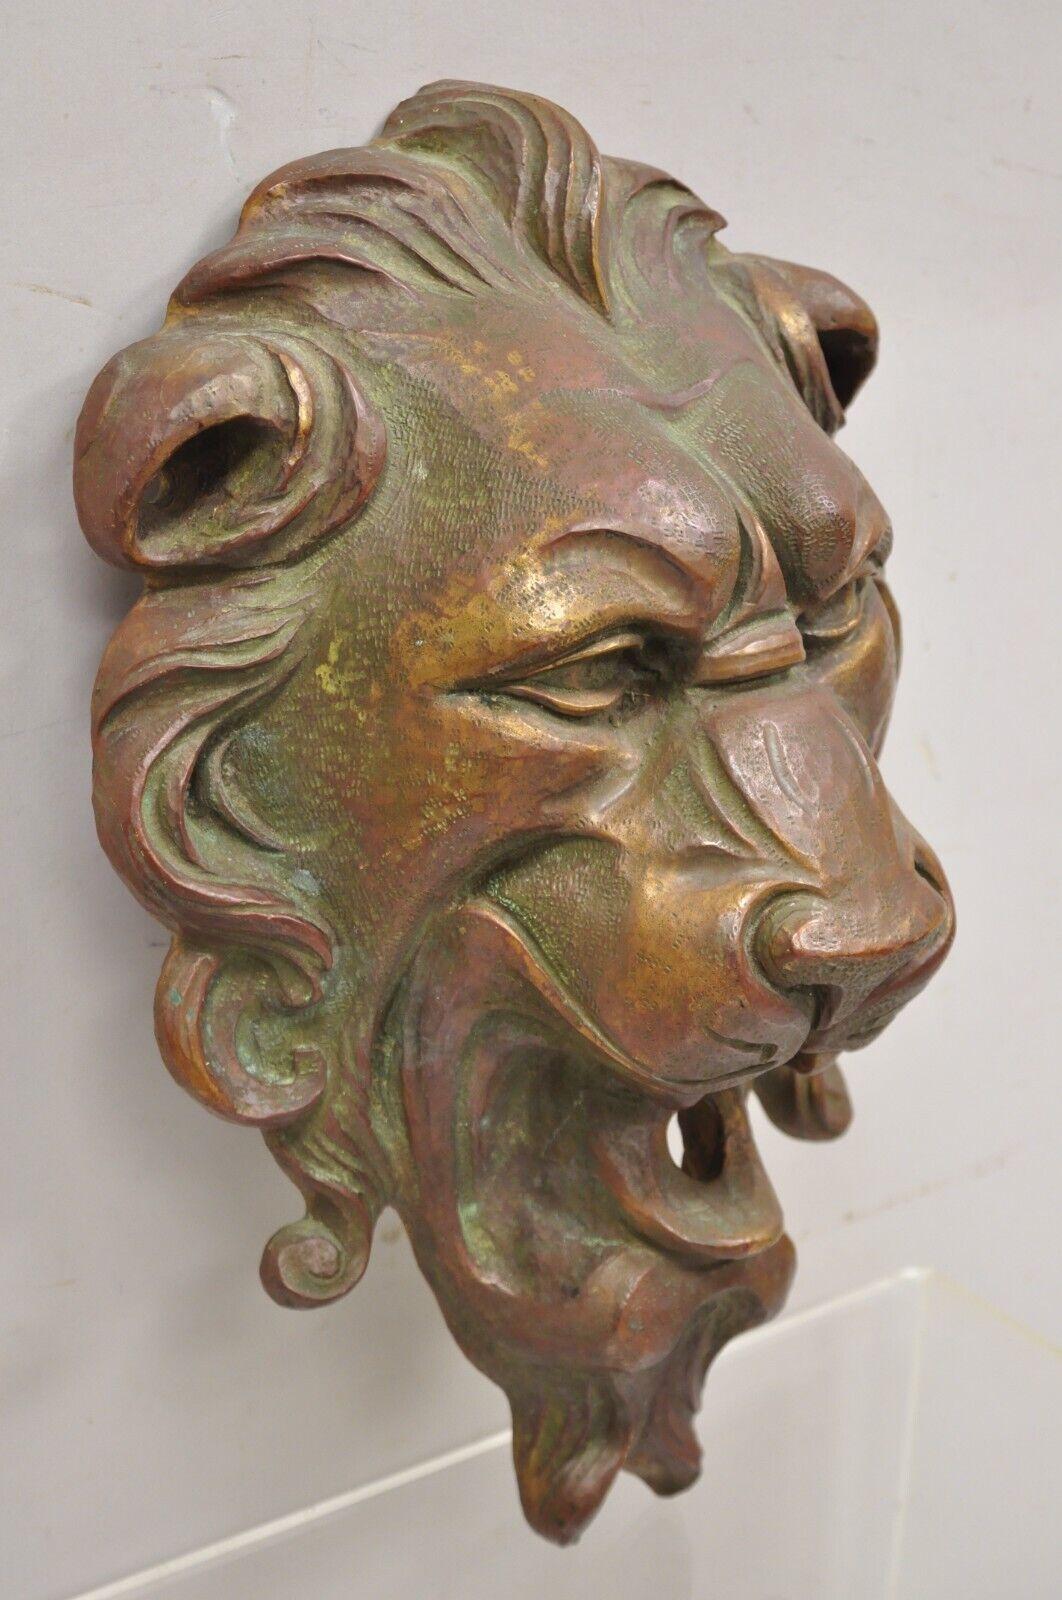 Plaque de fontaine murale en bronze antique à tête de lion. L'objet se caractérise par une construction en bronze coulé lourd, des détails remarquables et un poids d'environ 30 livres. Le tuyau et la pompe ne sont pas inclus. Circa Early 20th